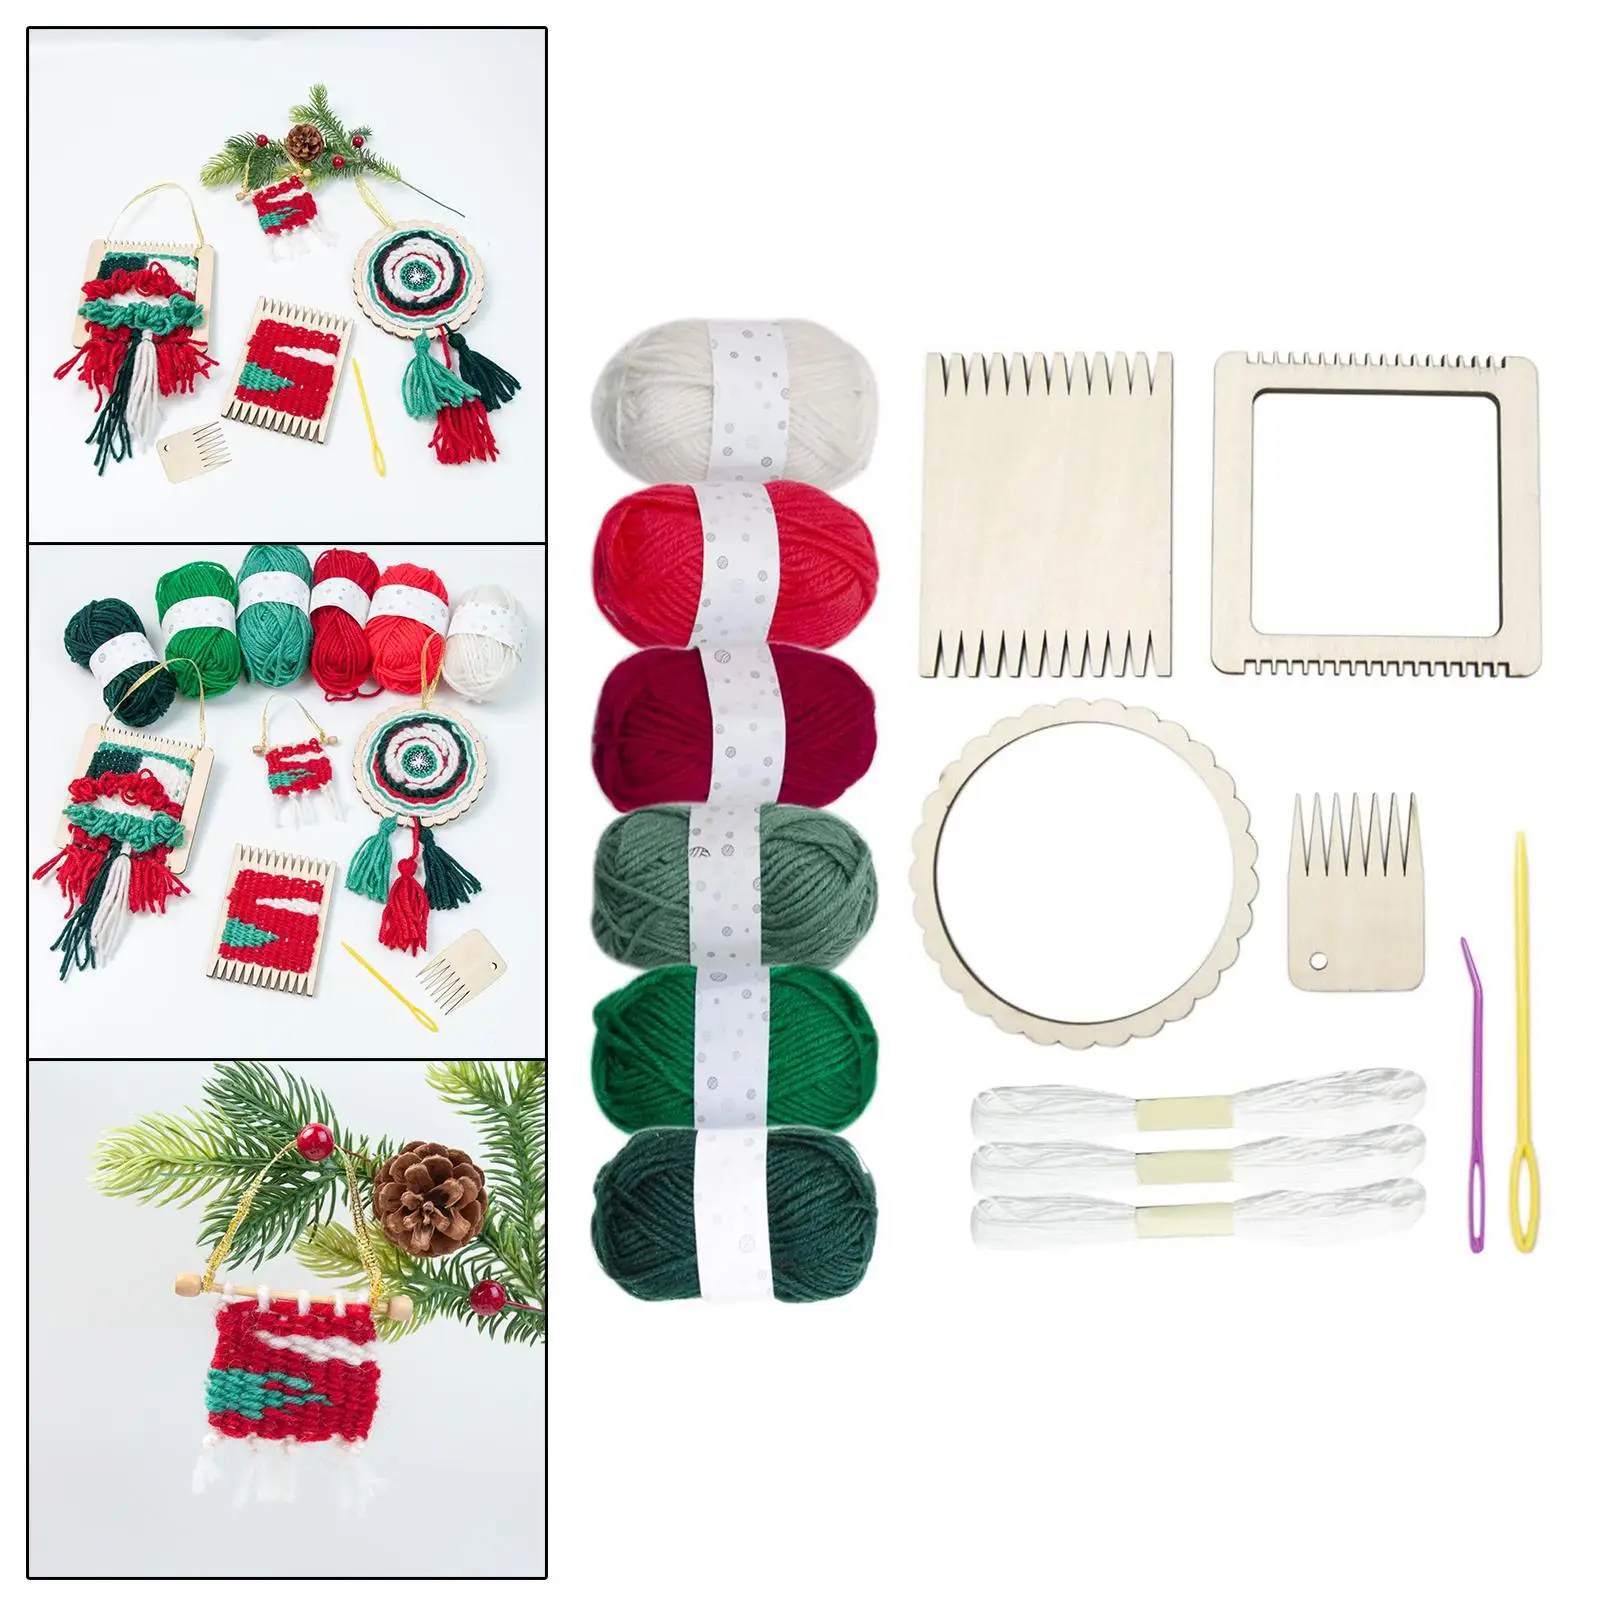 Weaving Kit Gift Accs Weaving Loom Kit for Pendant Weaving Home Tapestries